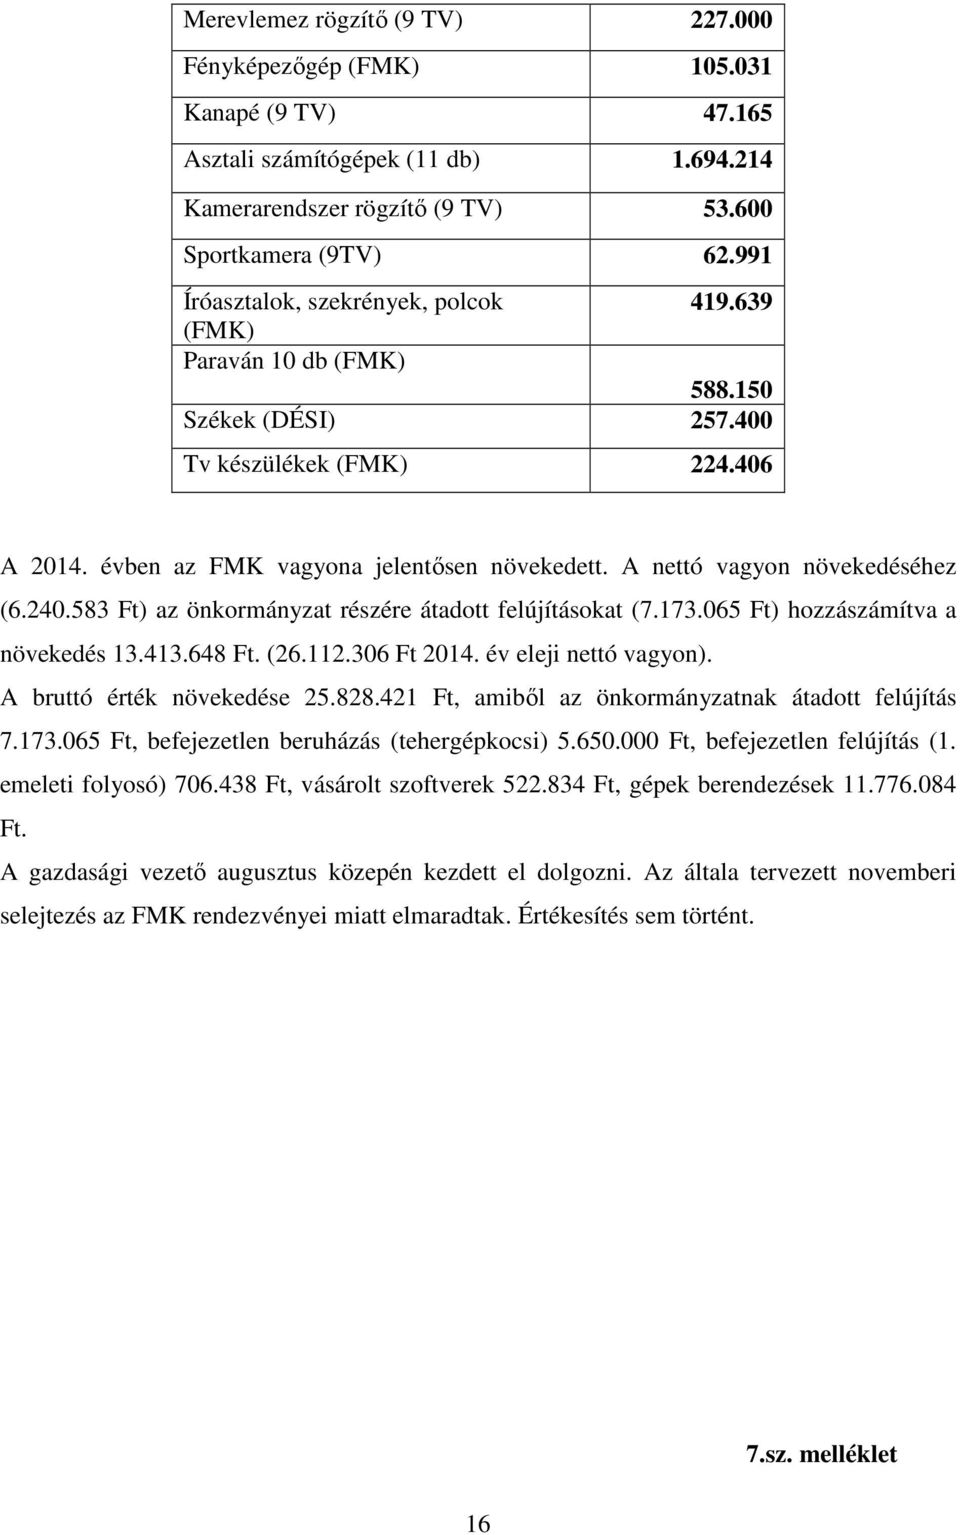 A nettó vagyon növekedéséhez (6.240.583 Ft) az önkormányzat részére átadott felújításokat (7.173.065 Ft) hozzászámítva a növekedés 13.413.648 Ft. (26.112.306 Ft 2014. év eleji nettó vagyon).